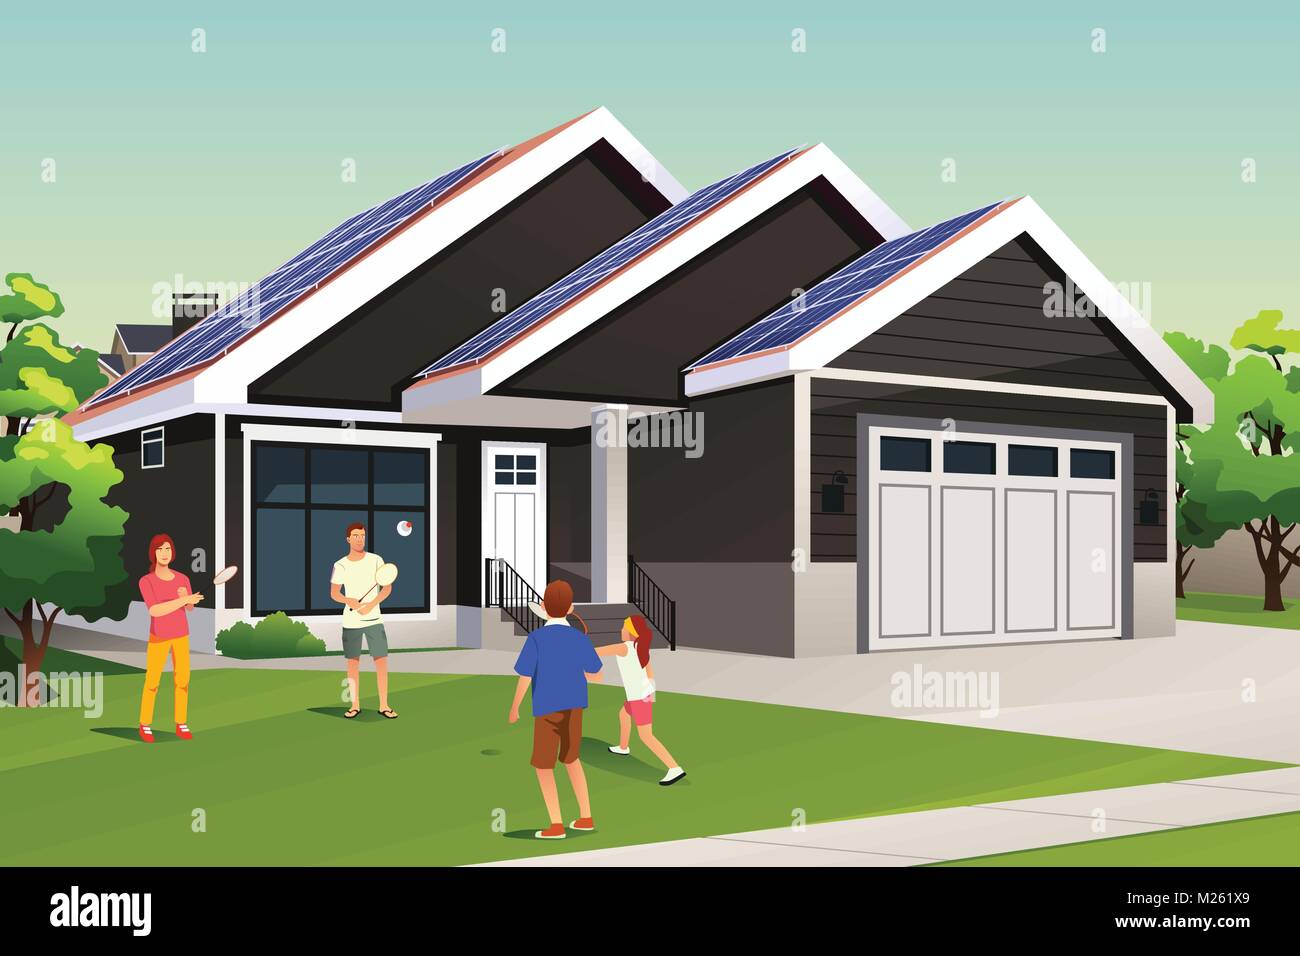 Ein Vektor Illustration der Familie Spielen außerhalb Ihres Hauses mit Solar Dach Stock Vektor